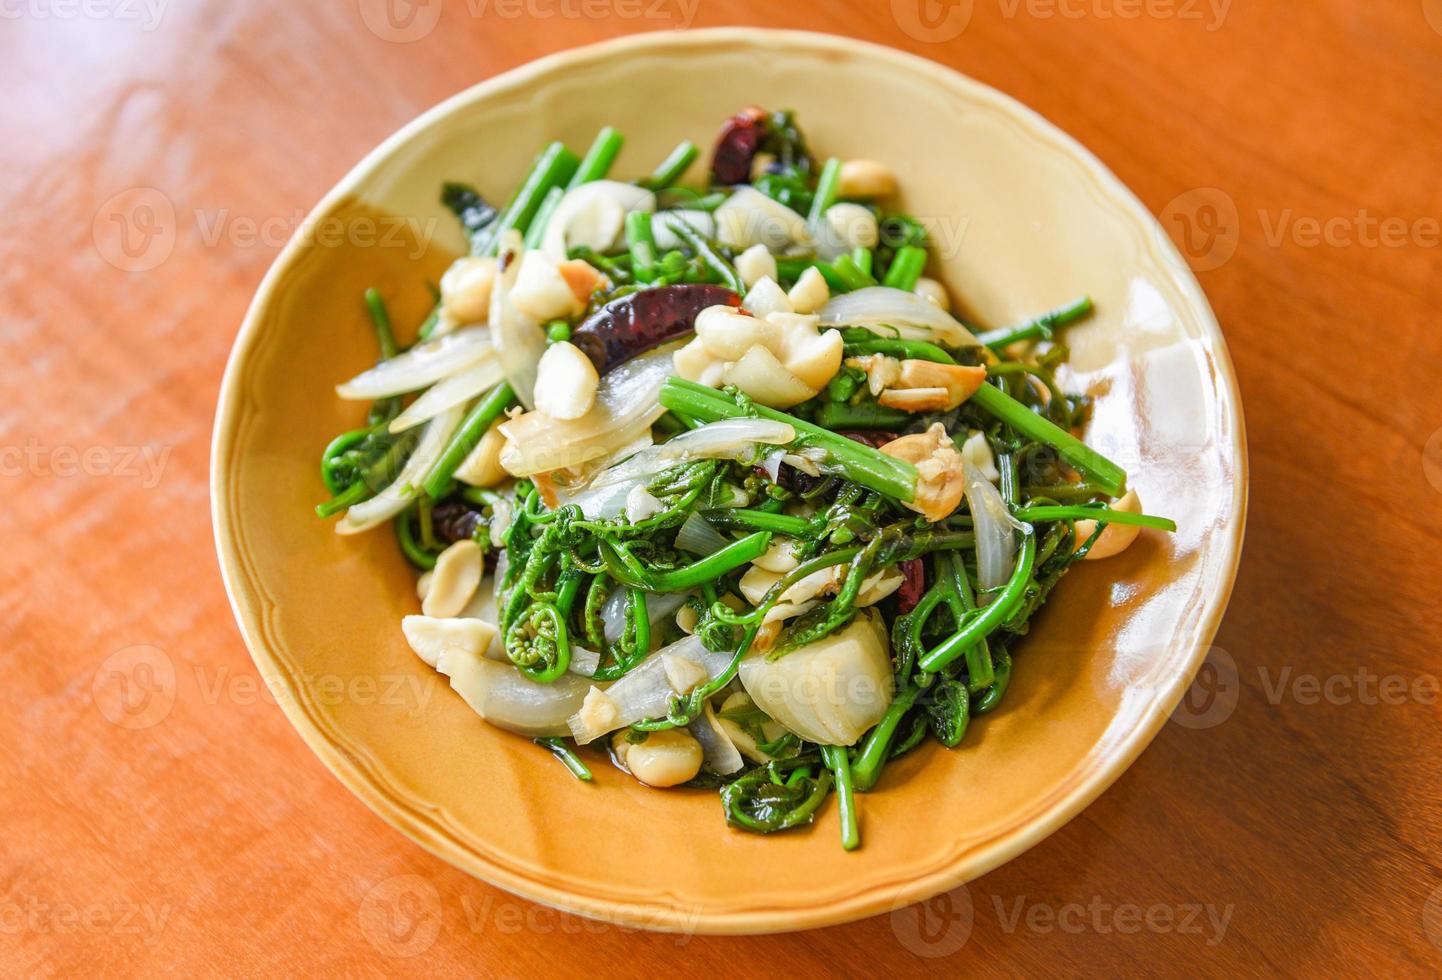 légumes frits - sauté de fougère paco avec noix de macadamia sur le dessus sur une assiette blanche, nourriture saine photo